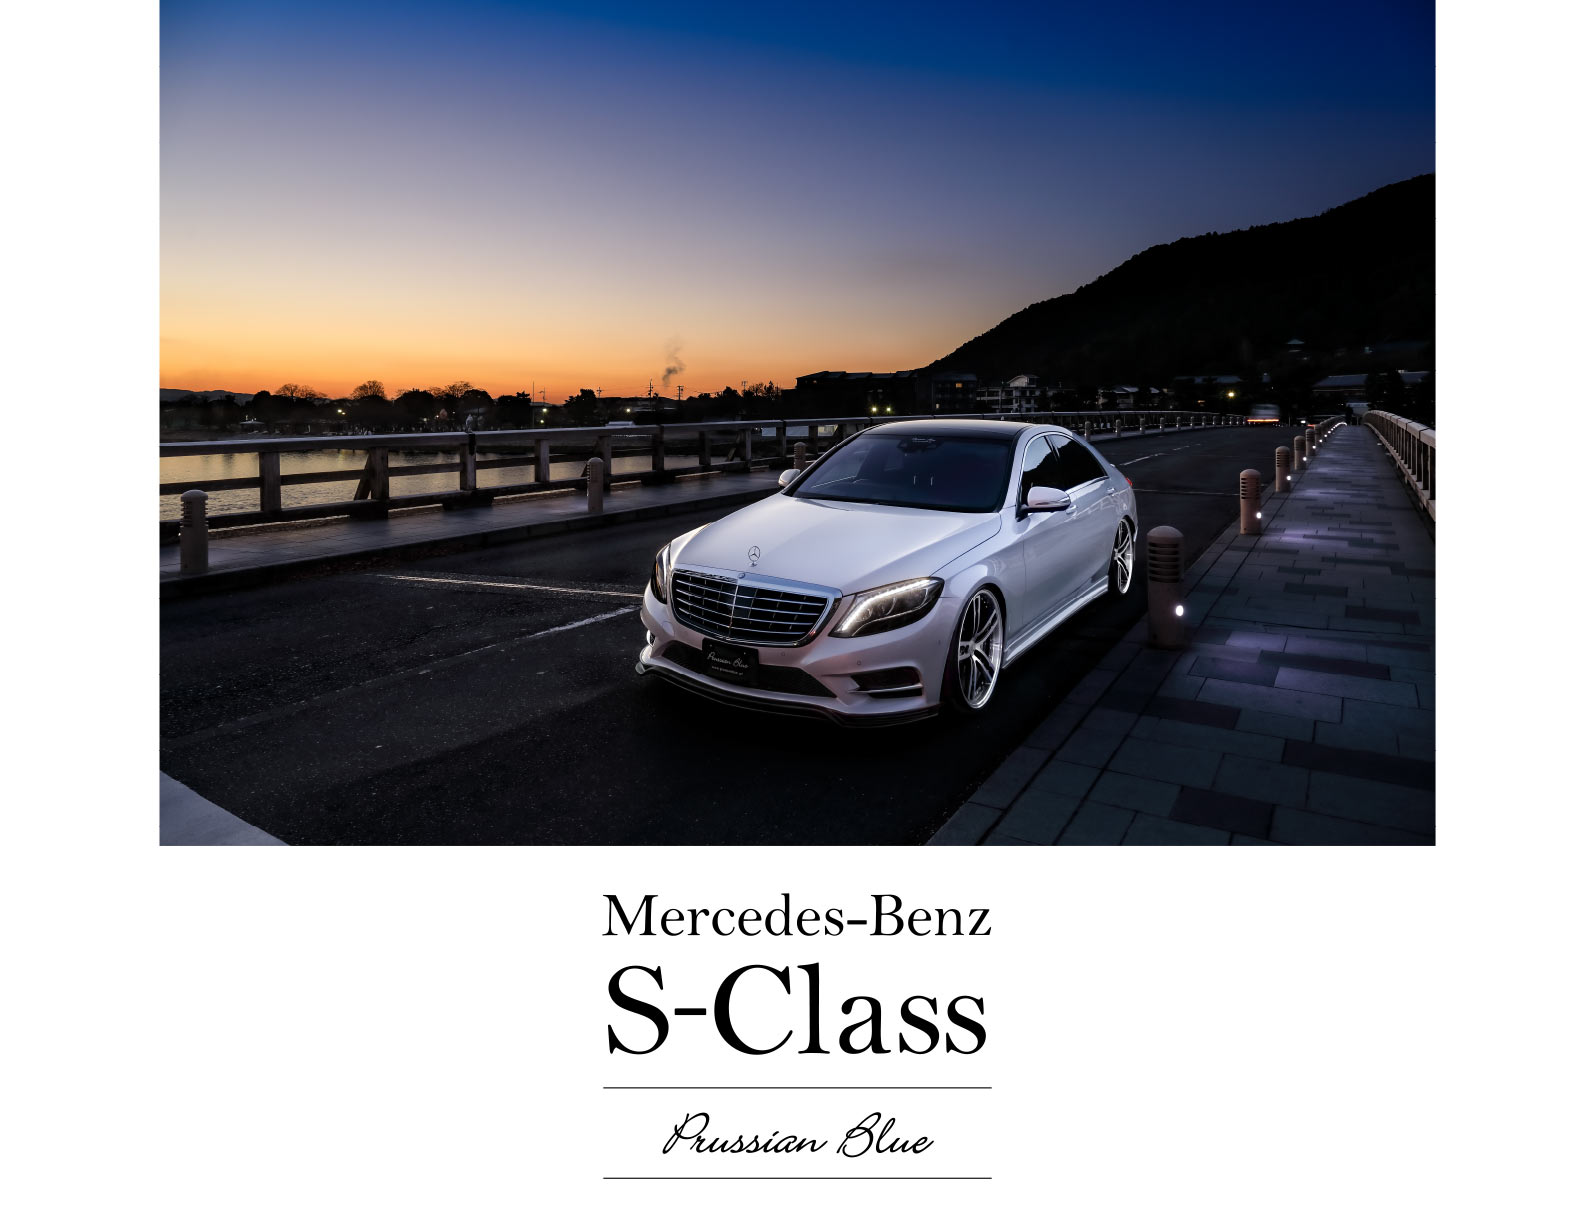 Mercedes-Benz S-Class Prussian Blue